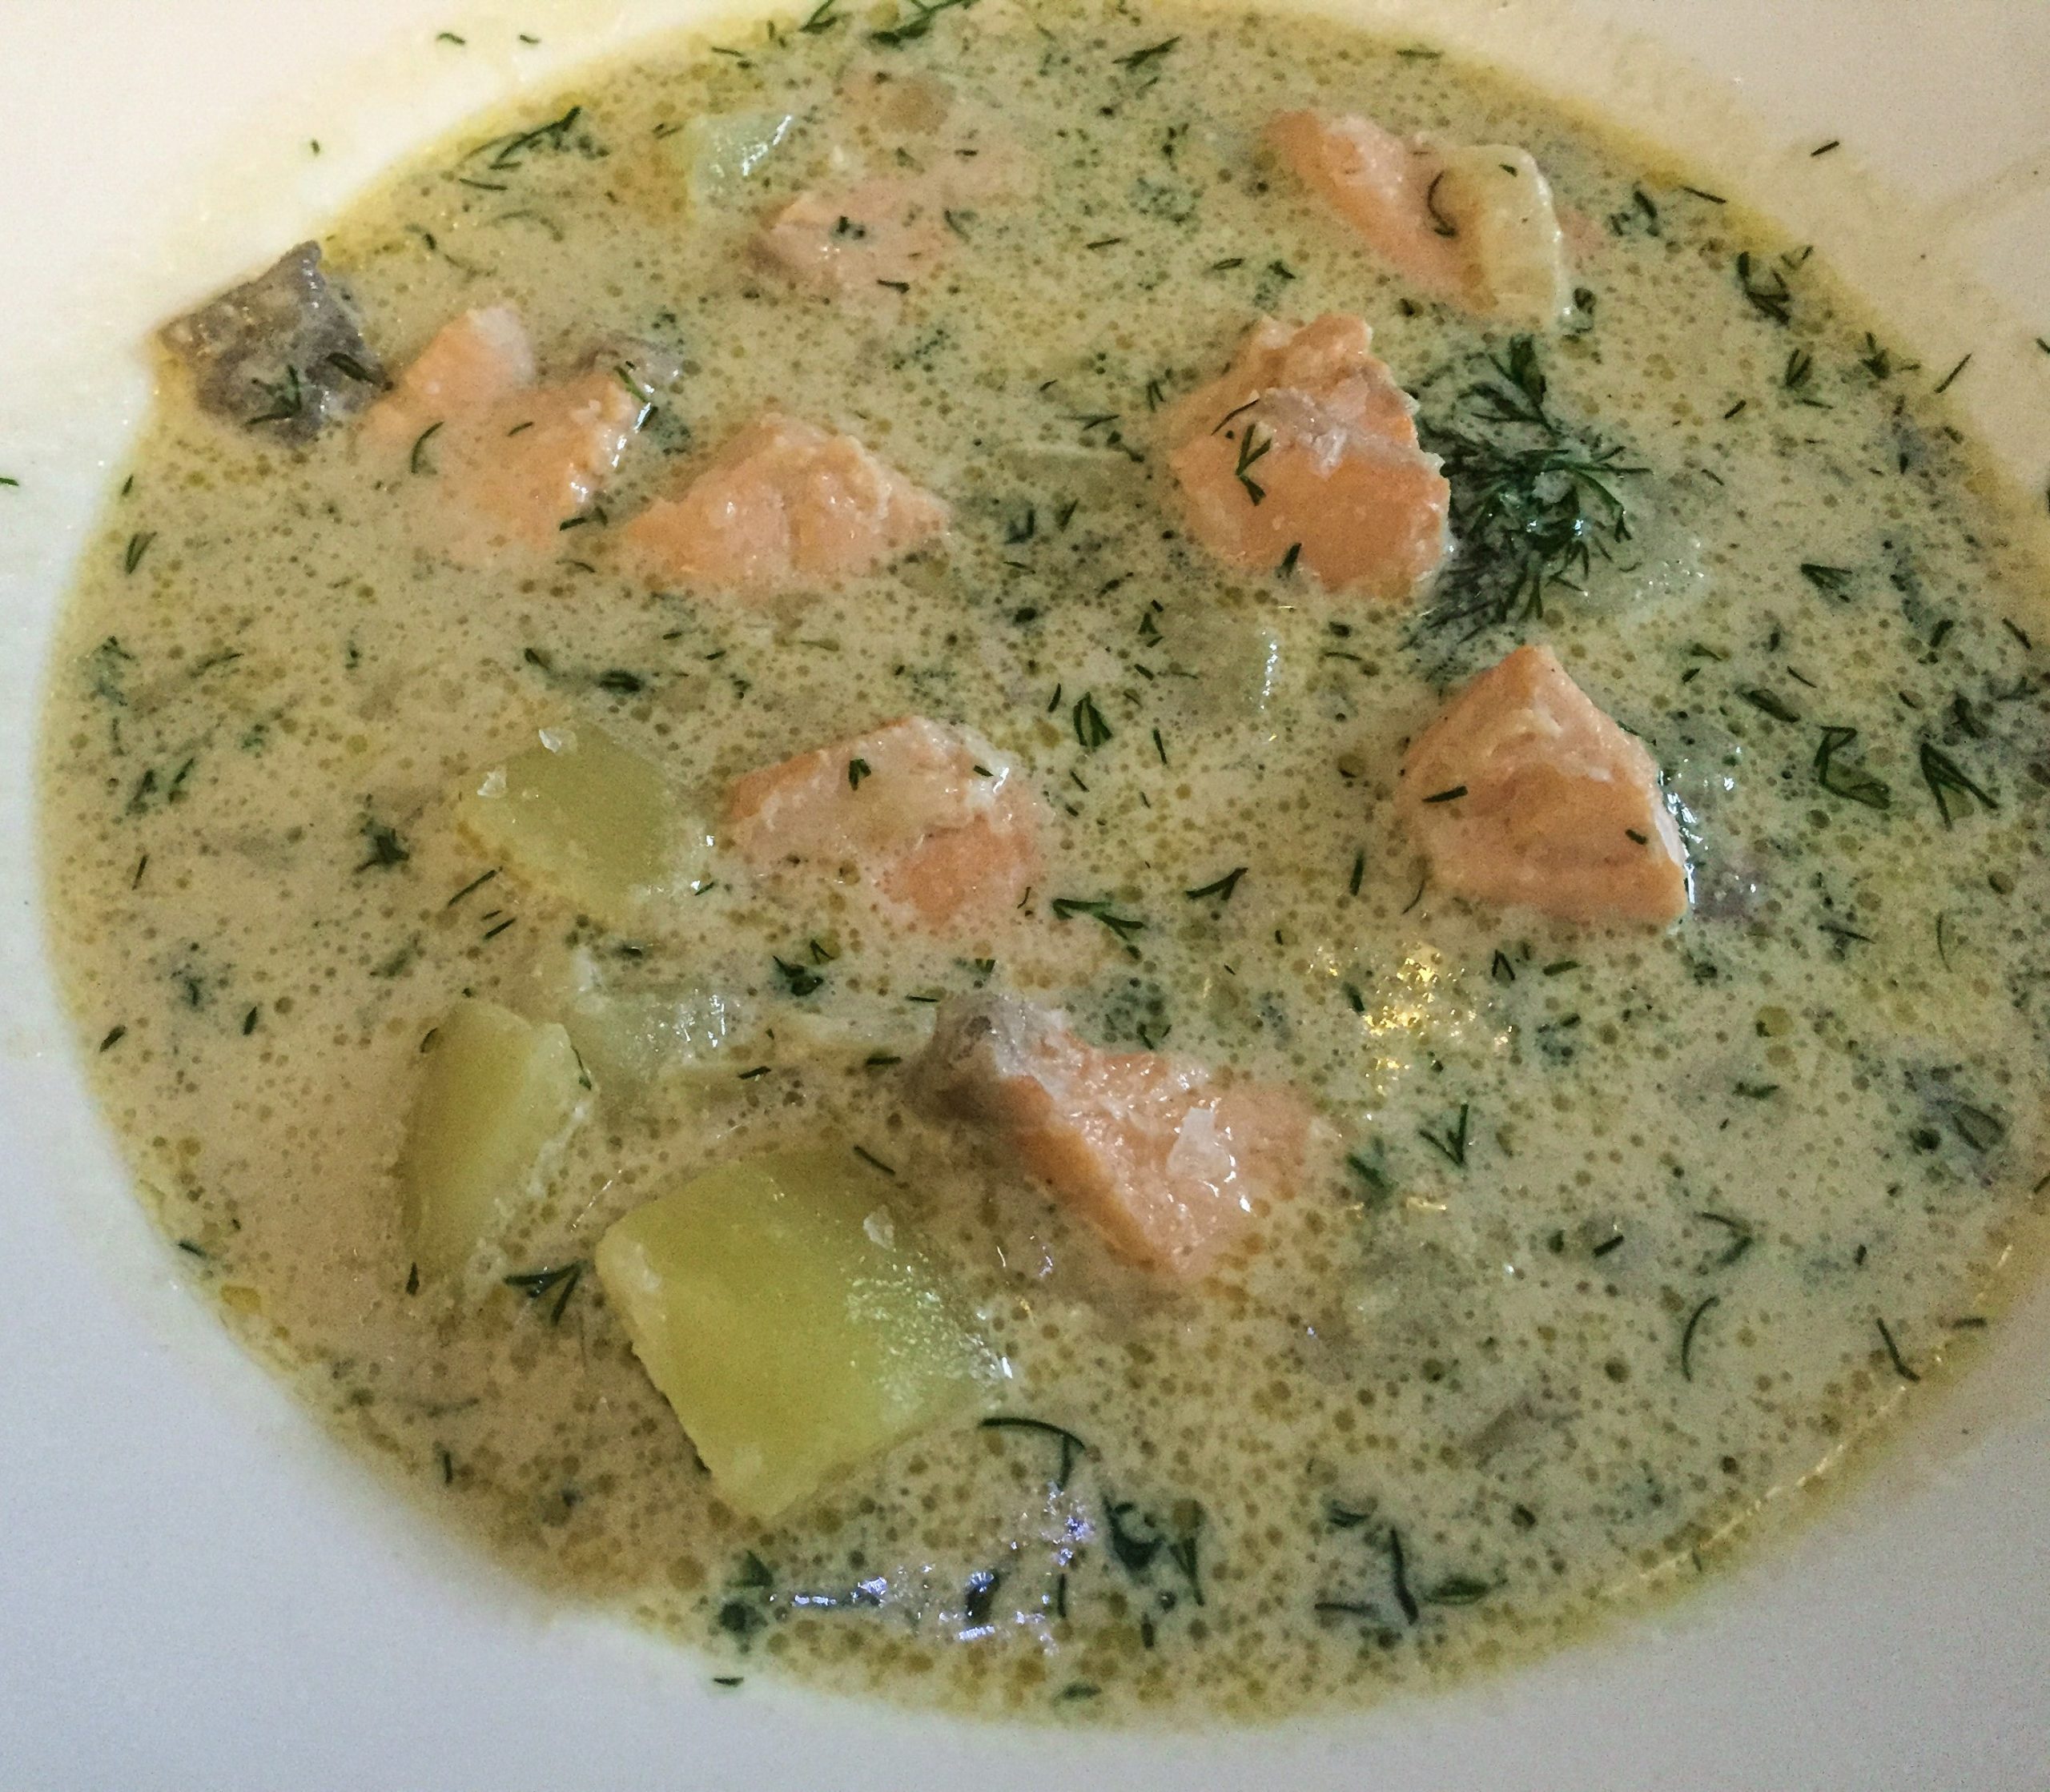 Lohikeitto (Finnish Salmon & Potato Soup)